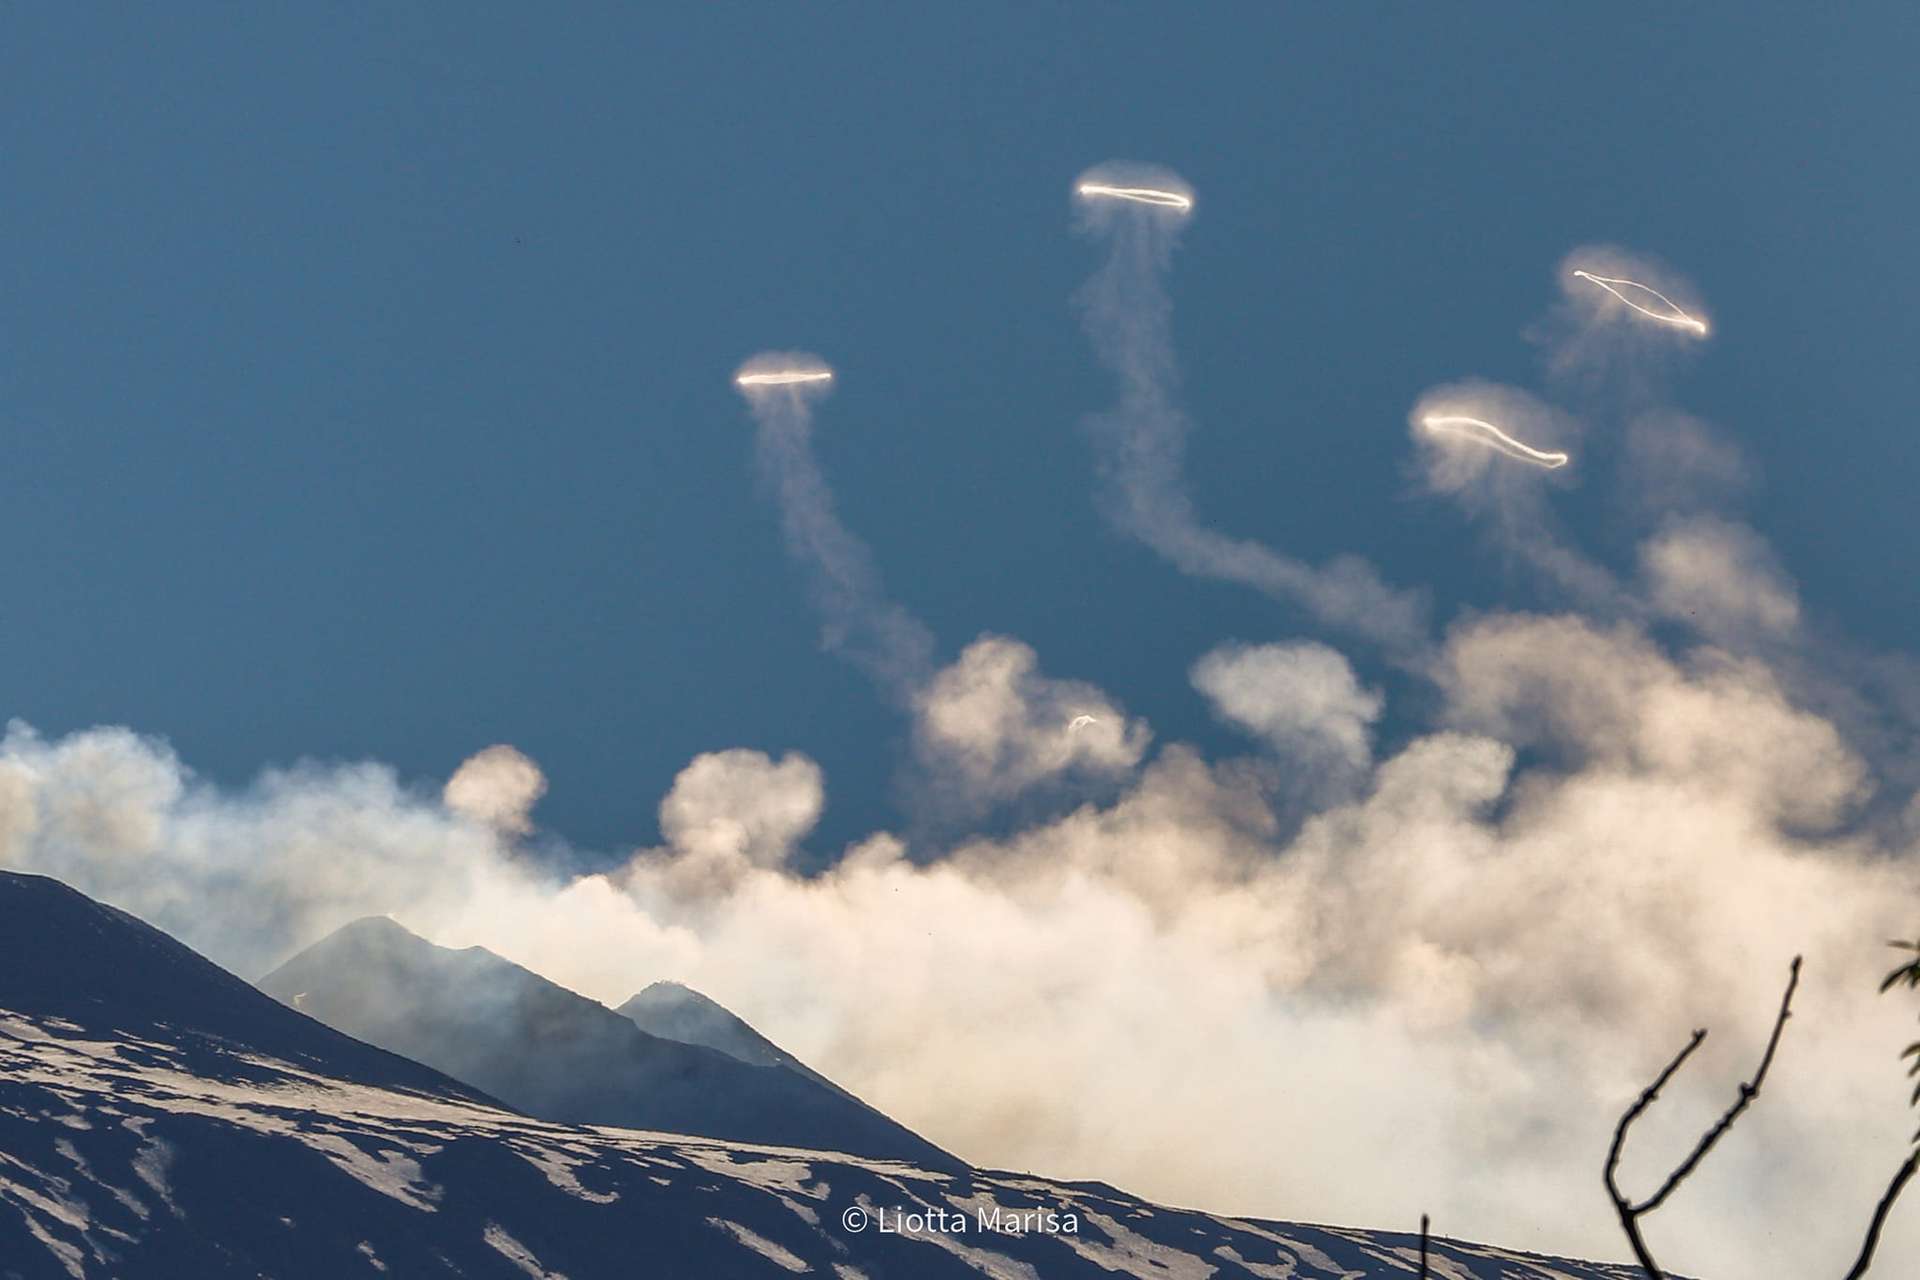 Des images impressionnantes de l'Etna en train de cracher des ronds de fumée